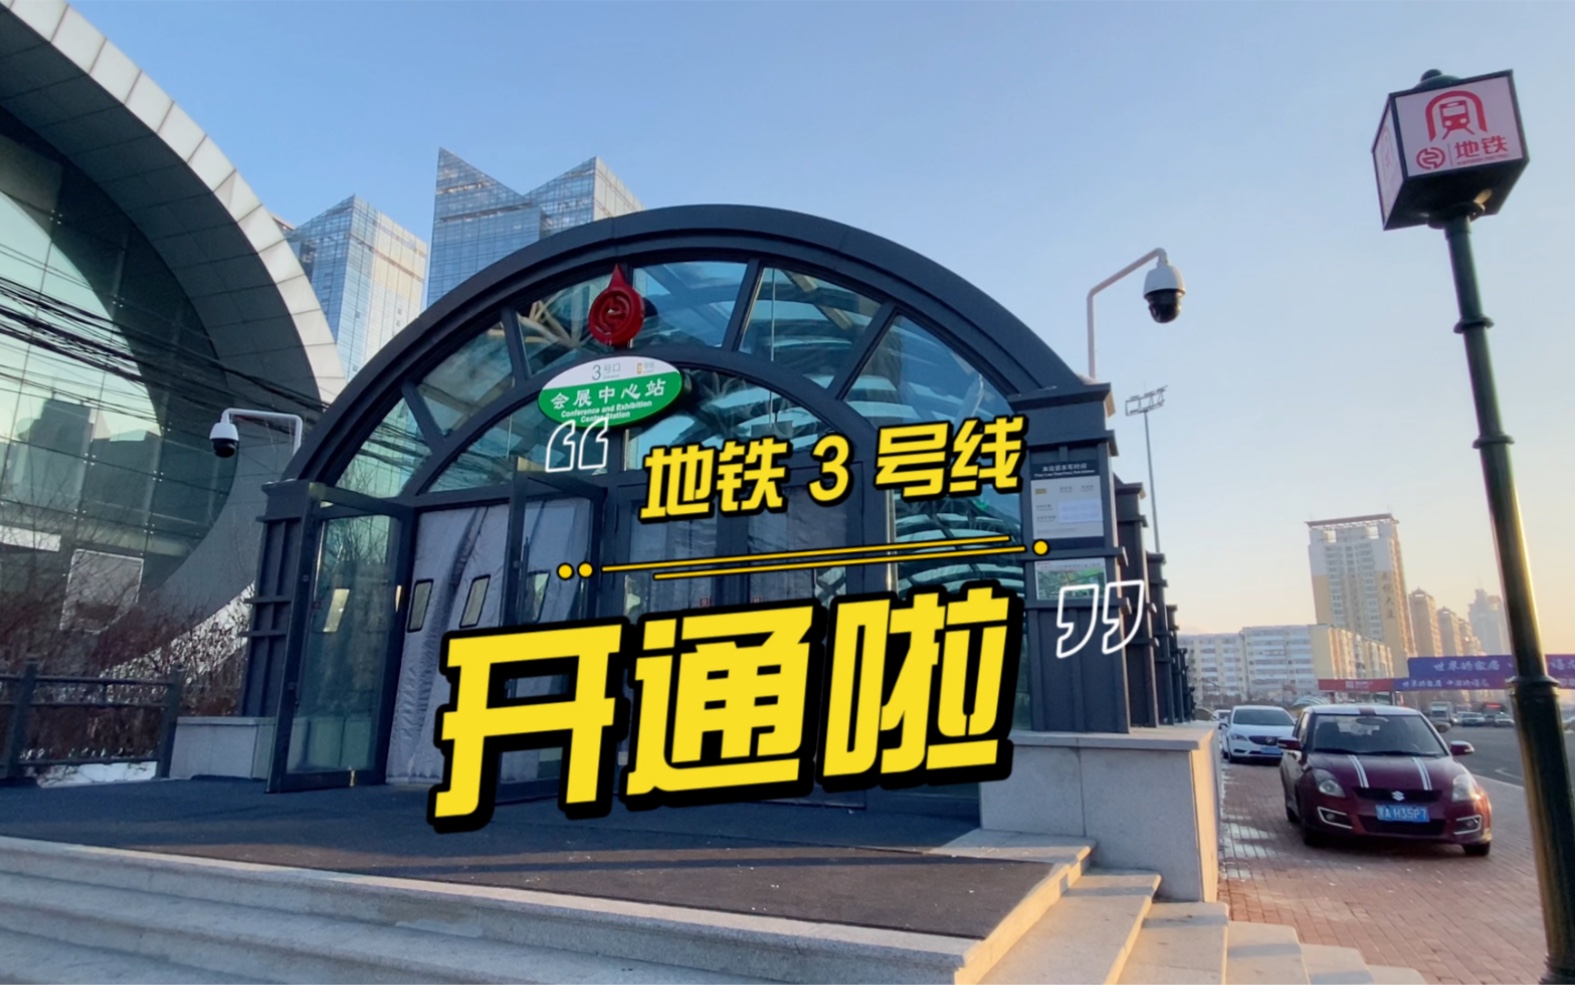 哈尔滨地铁3号线开通了!红博会展购物广场18周年庆!冲!